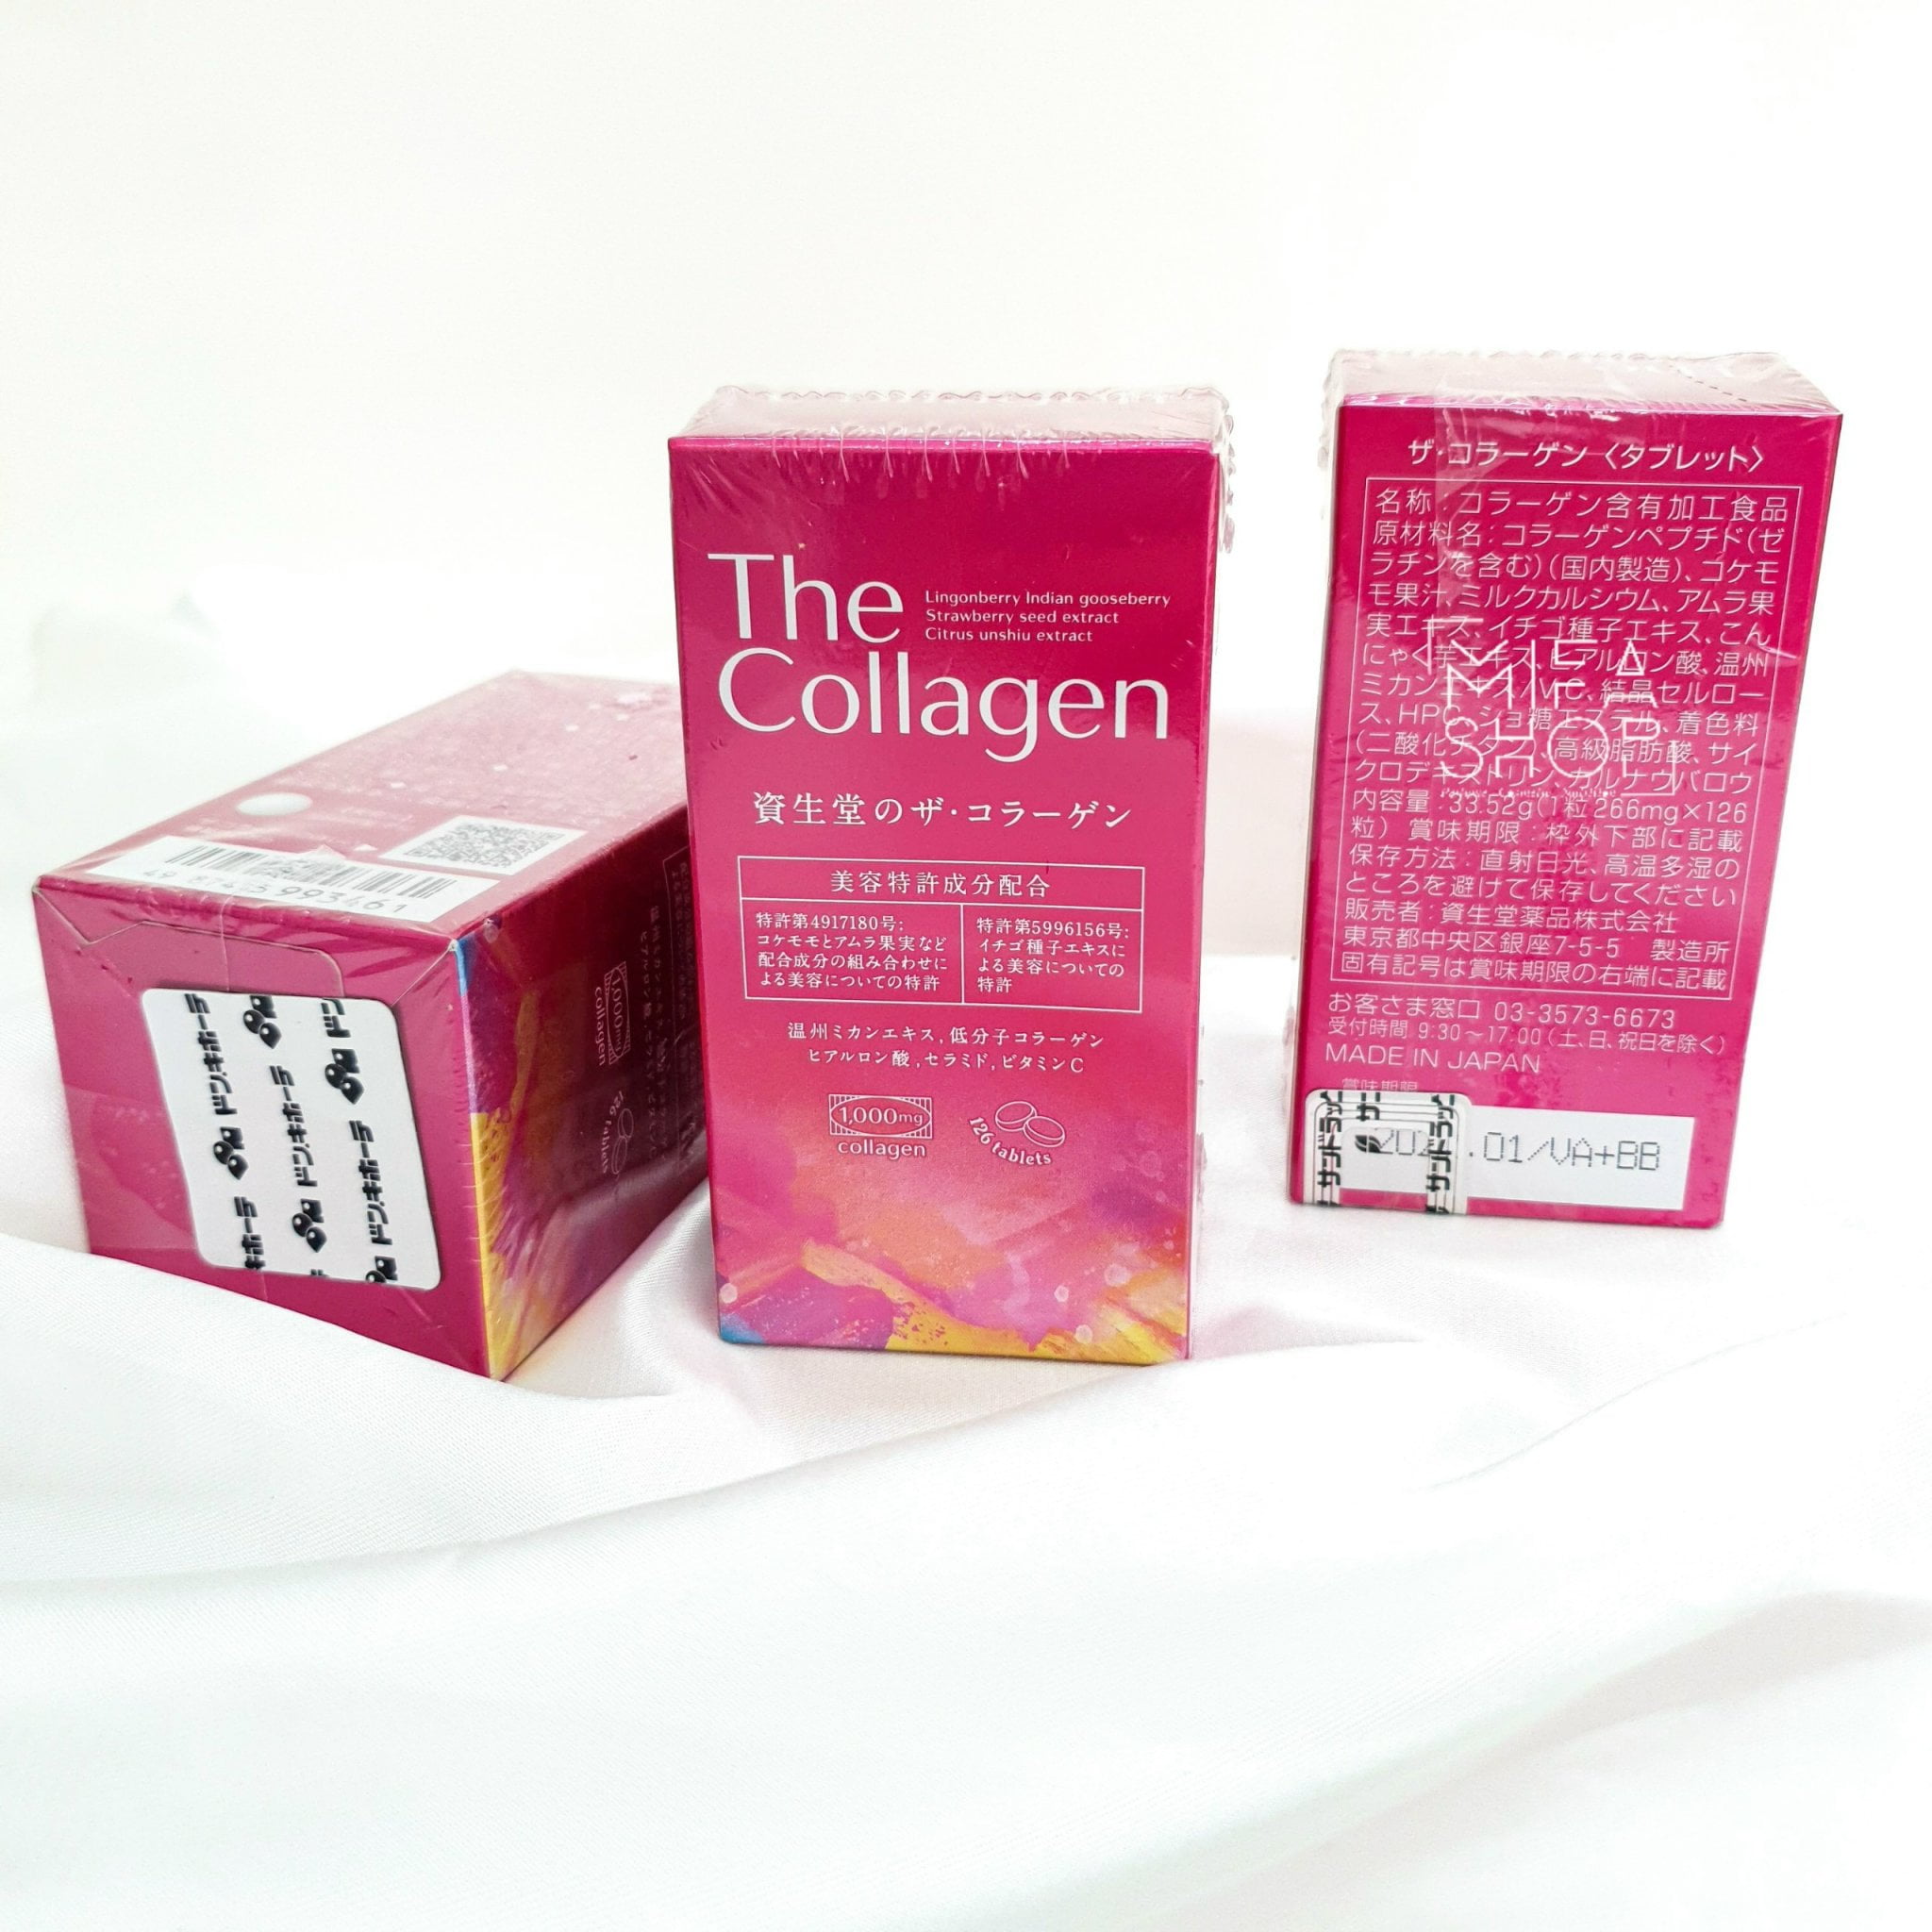 Viên Uống Bổ Sung Collagen The Collagen Shiseido 126 Viên 03